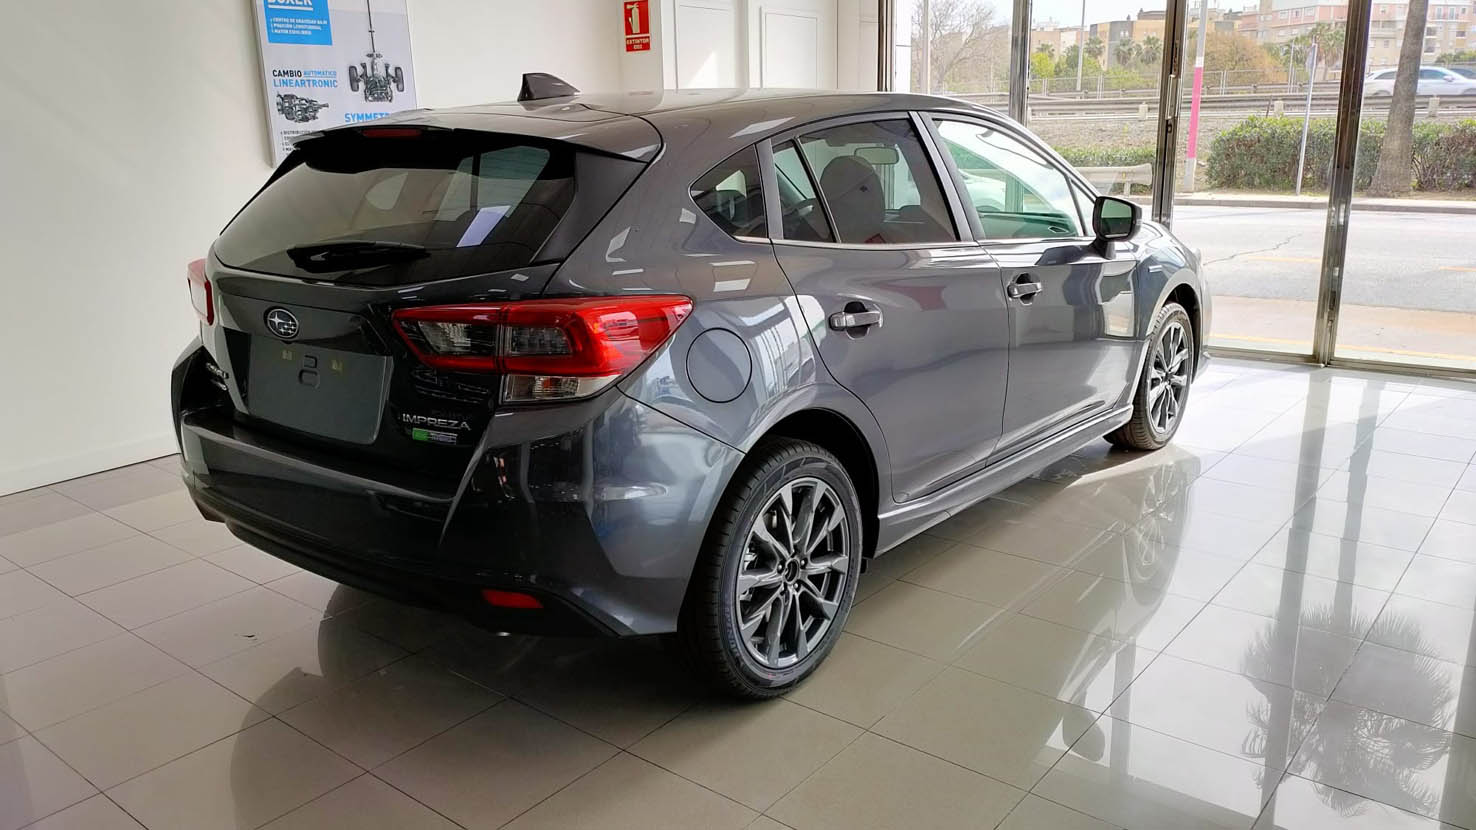 Subaru Impreza EcoHybrid ya disponible en Subaru Automóviles Nieto. Descubre ahora su versión hibridizada